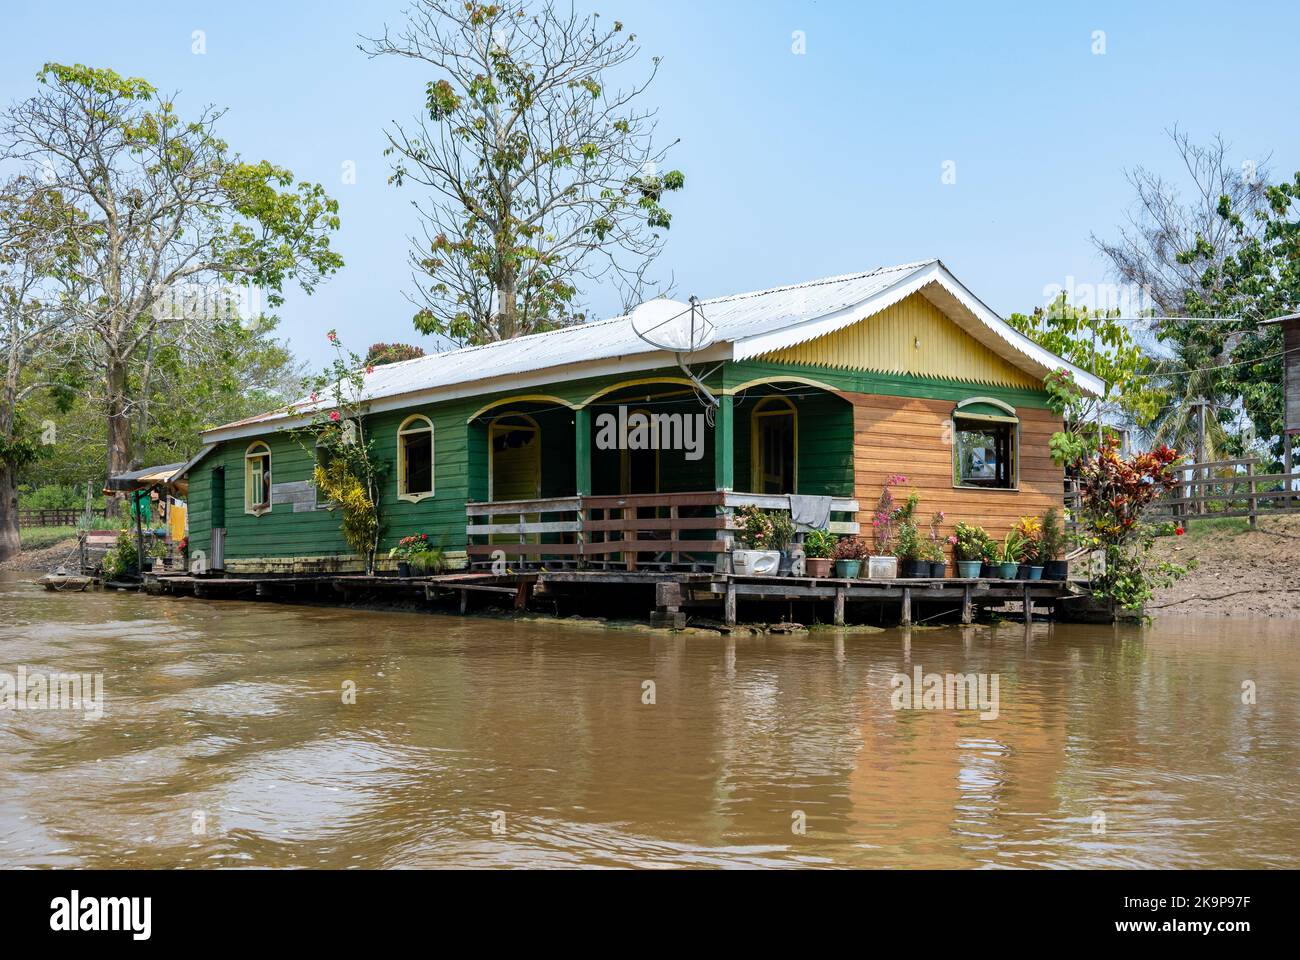 Maisons flottantes construites pour lutter contre les inondations saisonnières le long de la rivière Amazone. Manaus, Amazonas, Brésil Banque D'Images